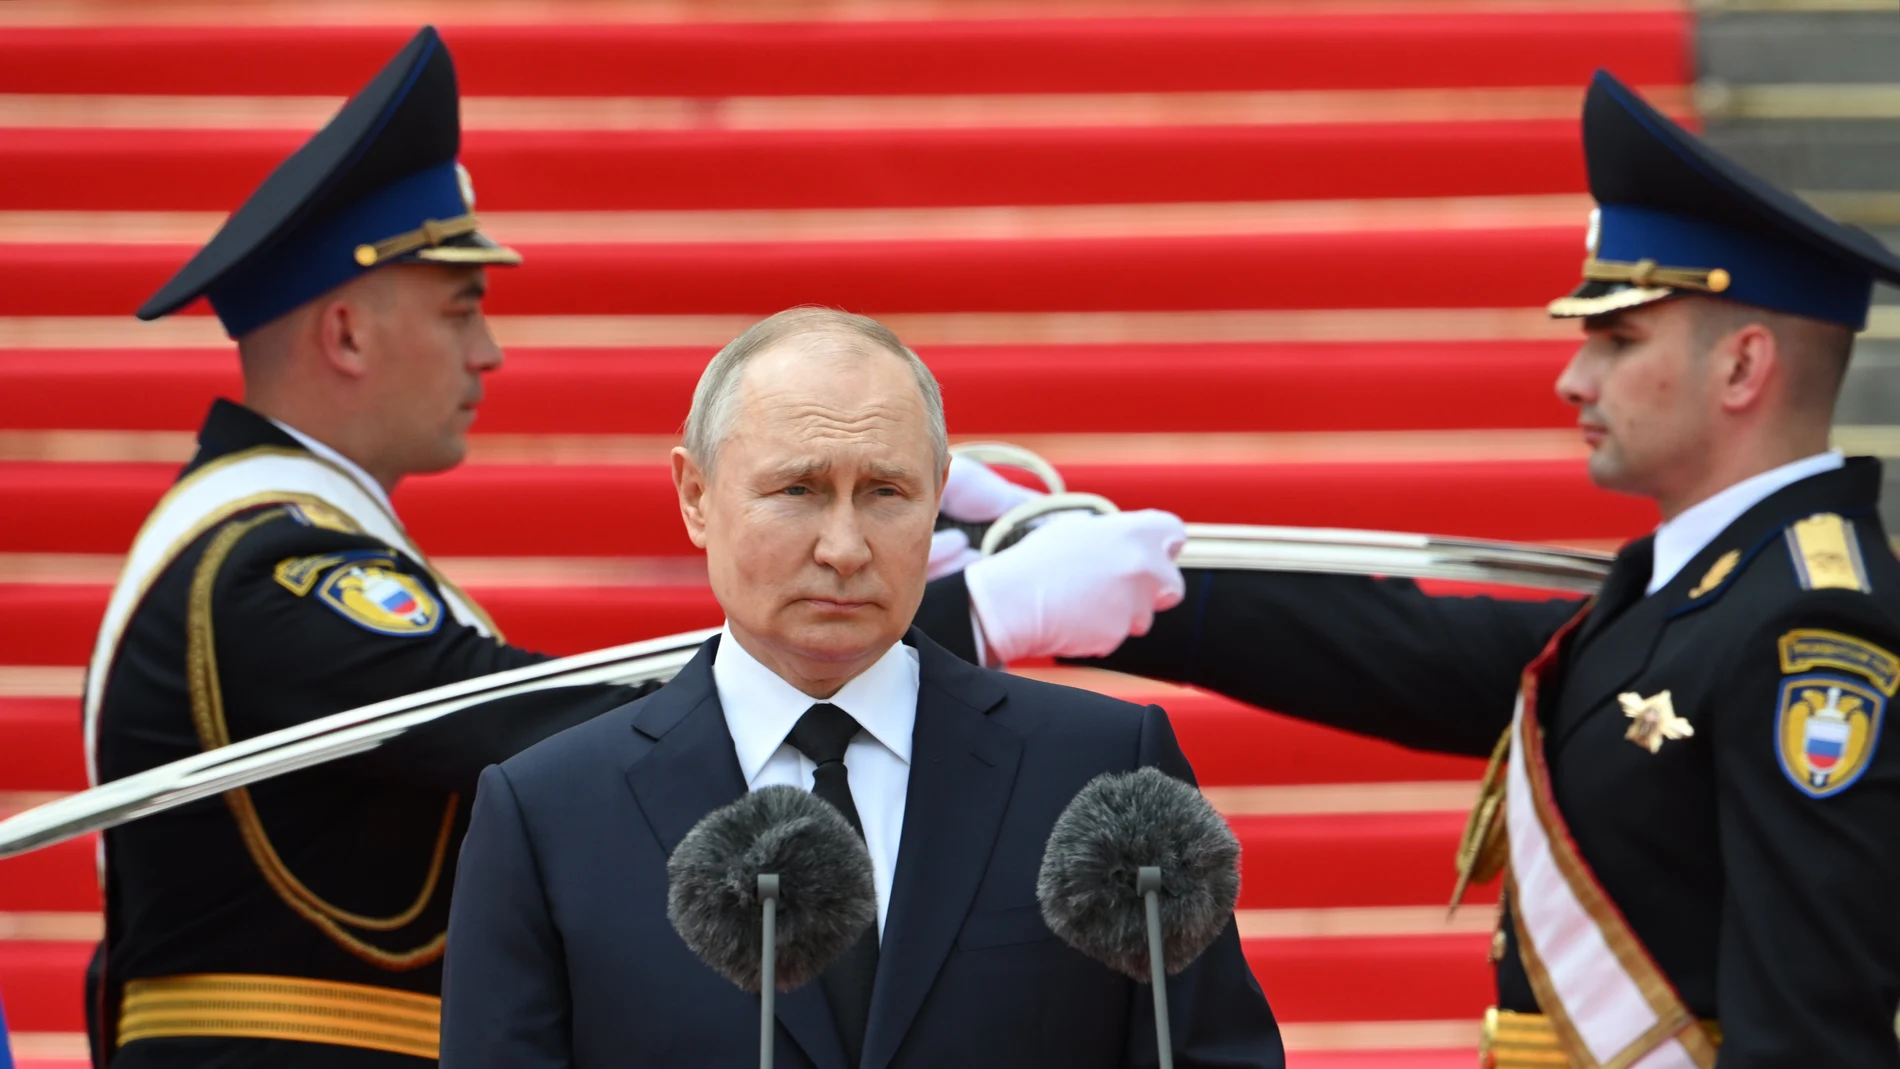 Vladimir Putin cosenguirá sin oposición un sengudo mandato presidencial